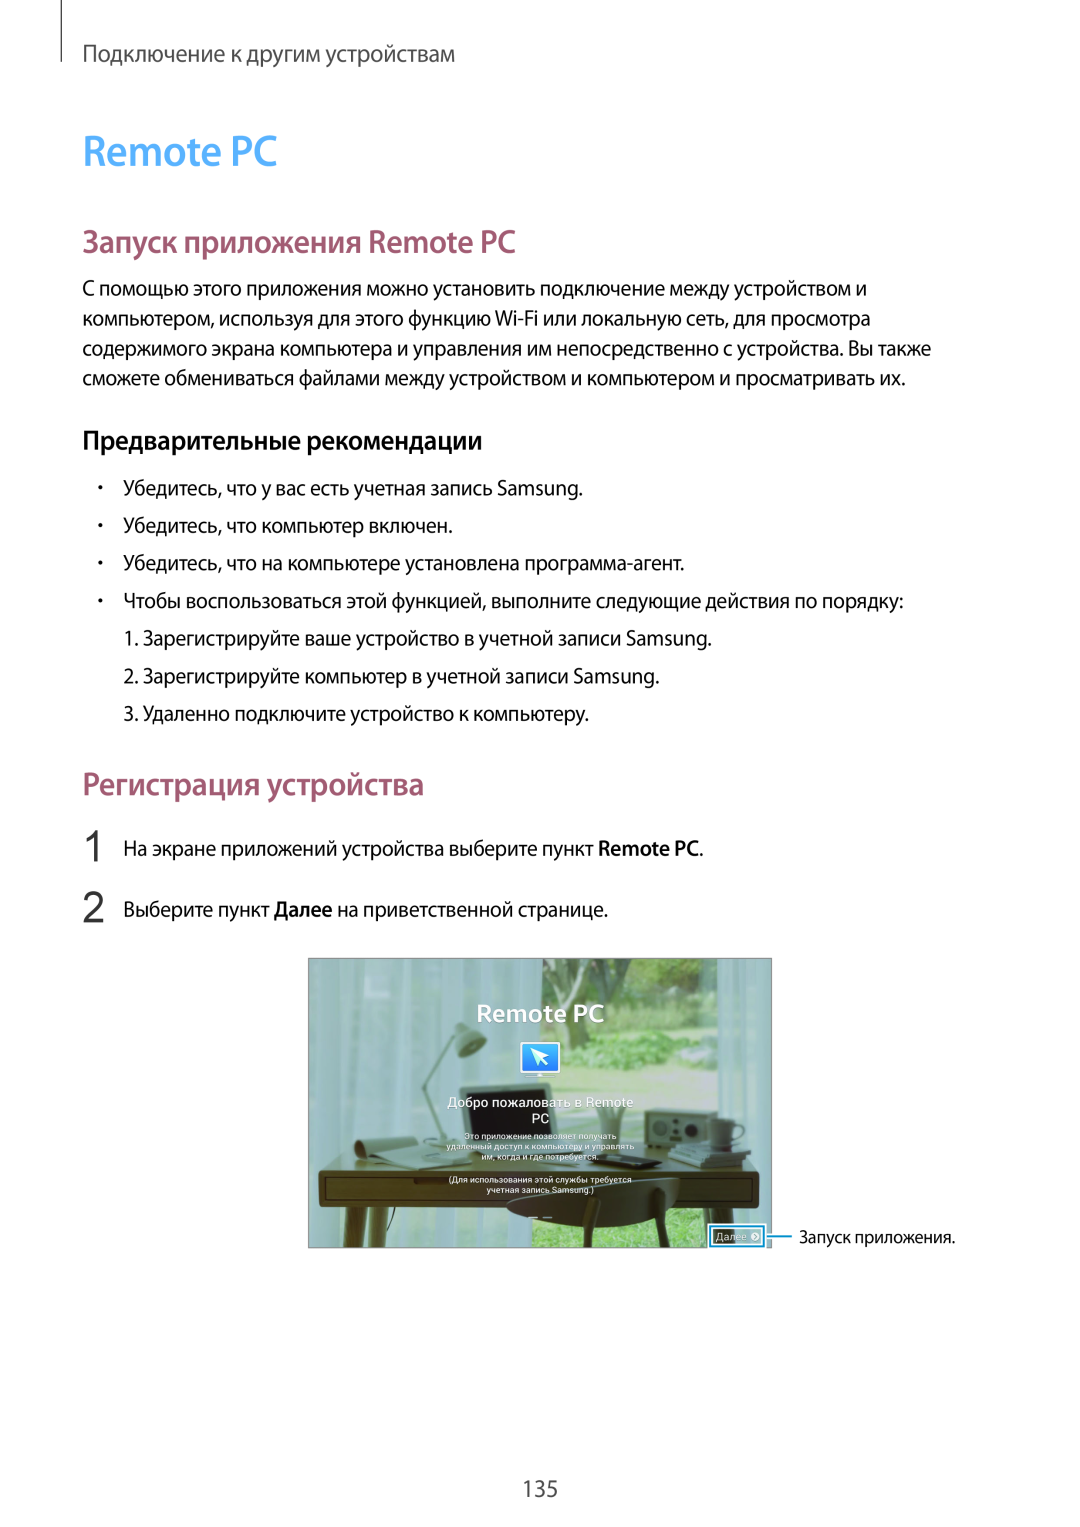 Samsung SM-T800NHAASER manual Запуск приложения Remote PC, Регистрация устройства, Предварительные рекомендации 